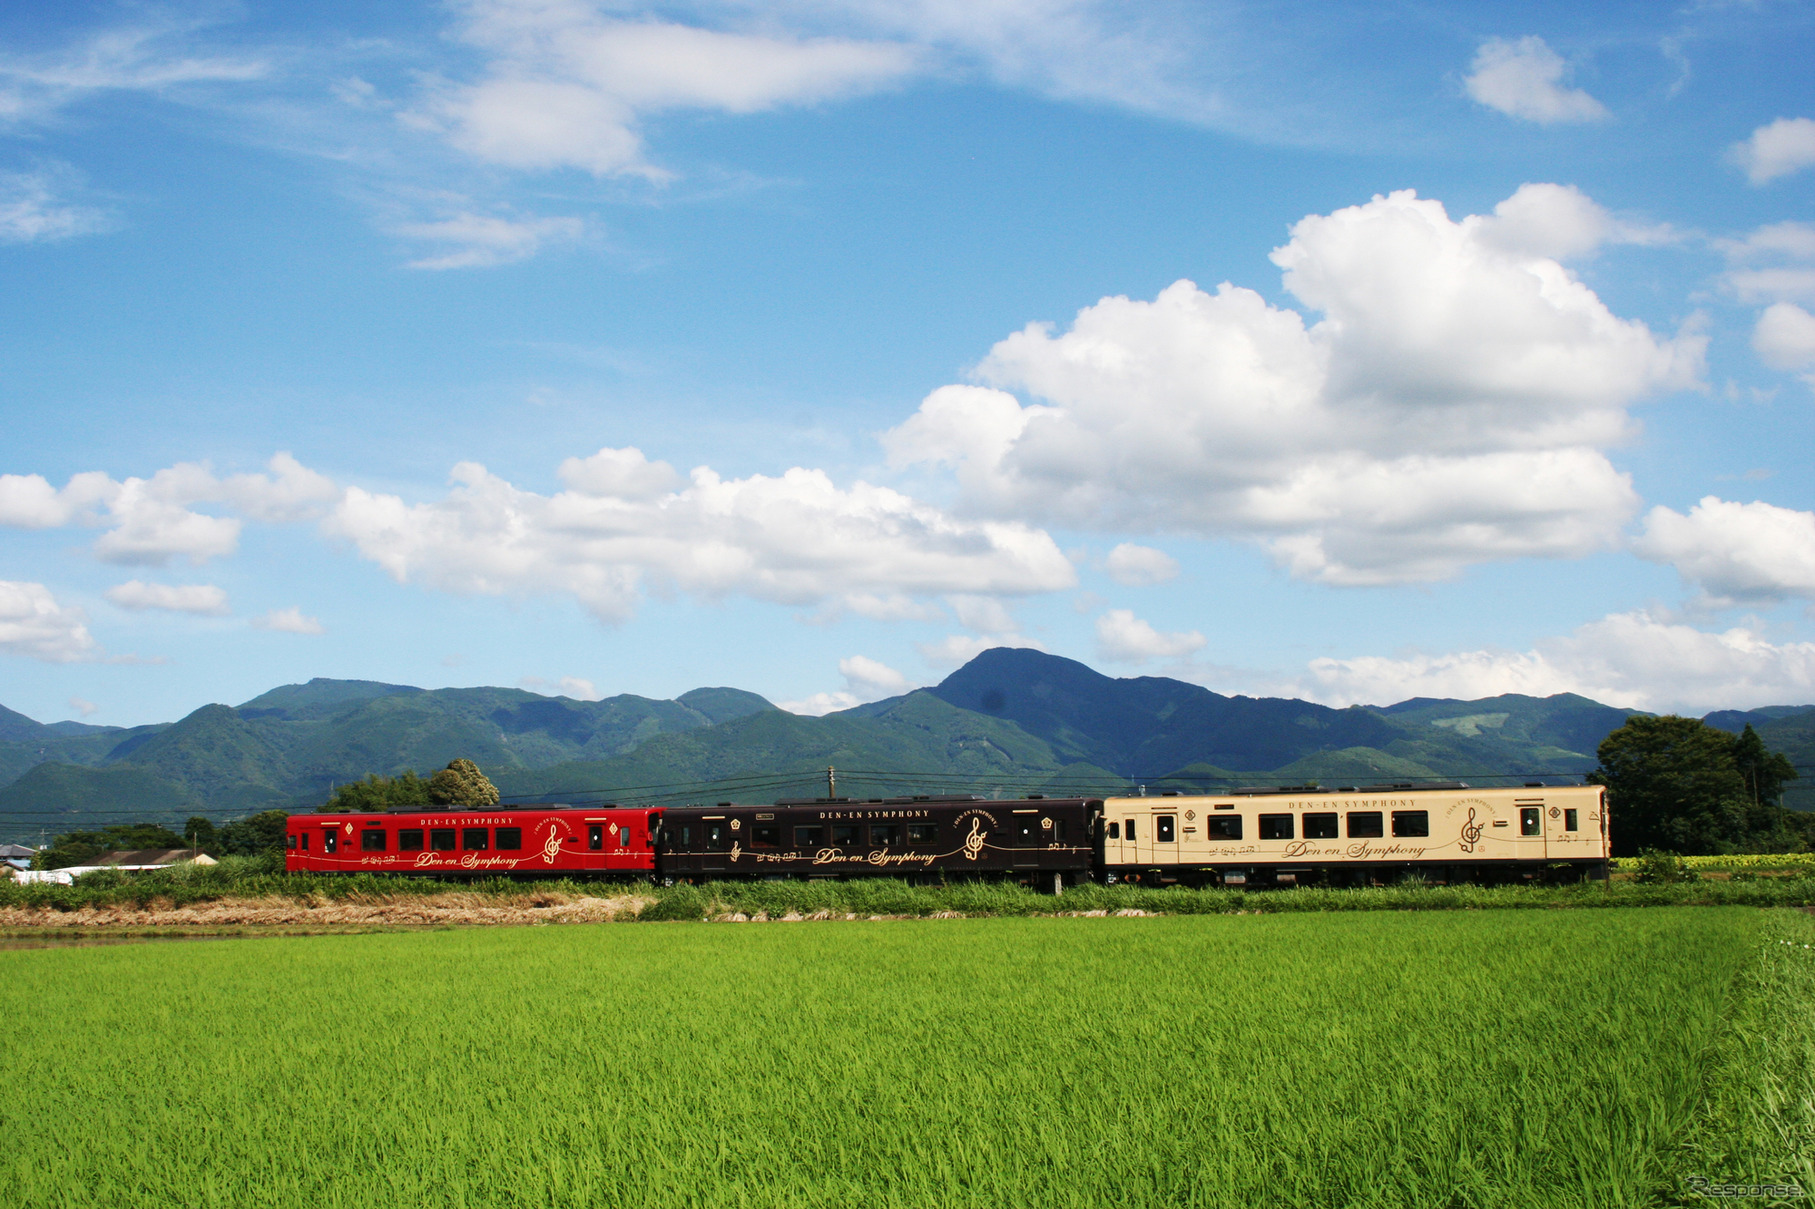 前回は東京メトロ・ANA・熊本電鉄の3社が参加したが、今回は熊本県内の4社局が新たに加わる。写真はくま川鉄道。